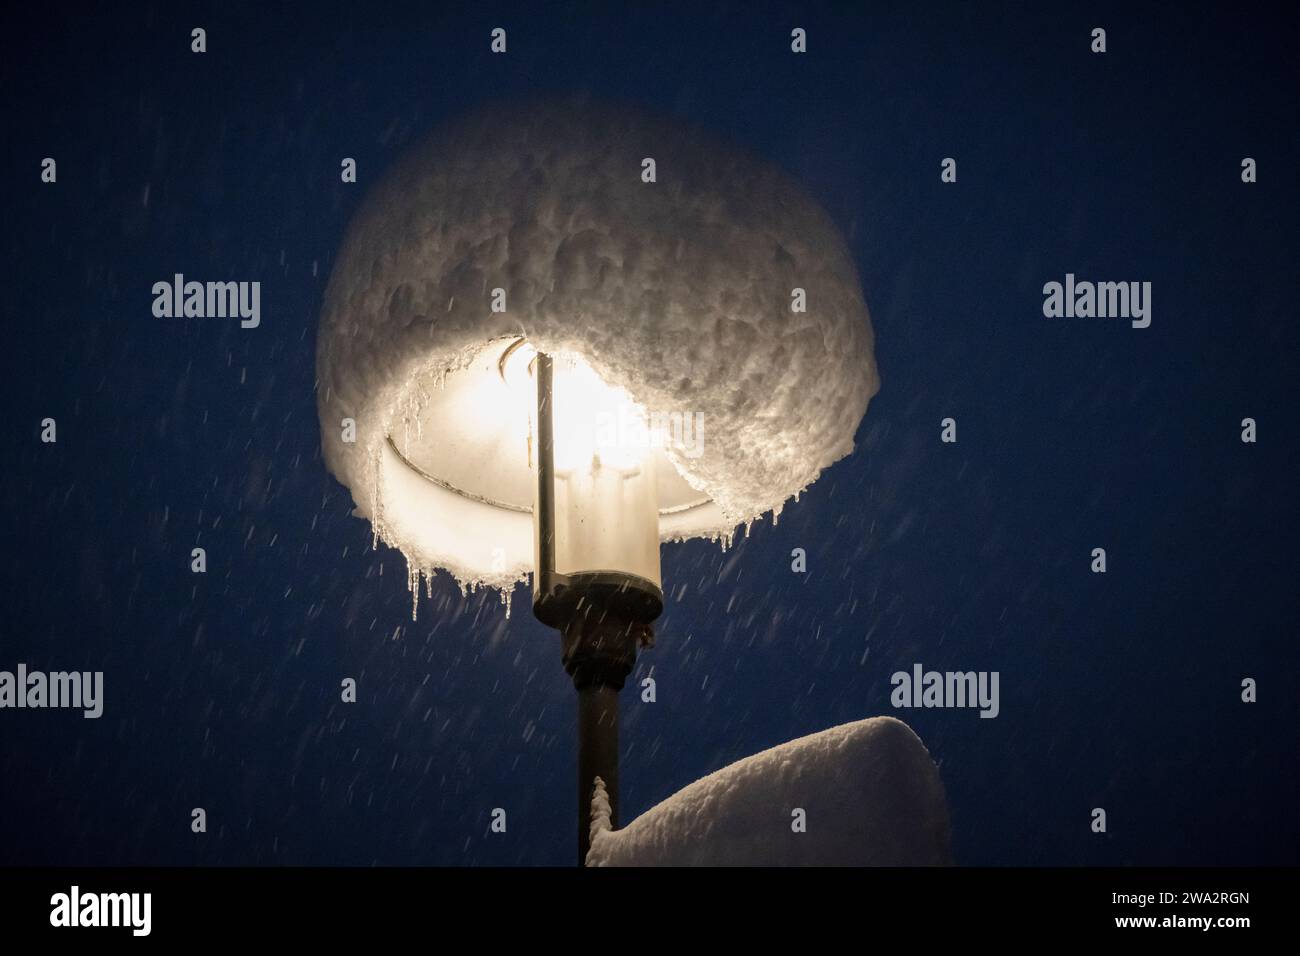 Lampadaire avec bonnet fait de neige fraîche lors de fortes chutes de neige la nuit, Bavière, Allemagne Banque D'Images